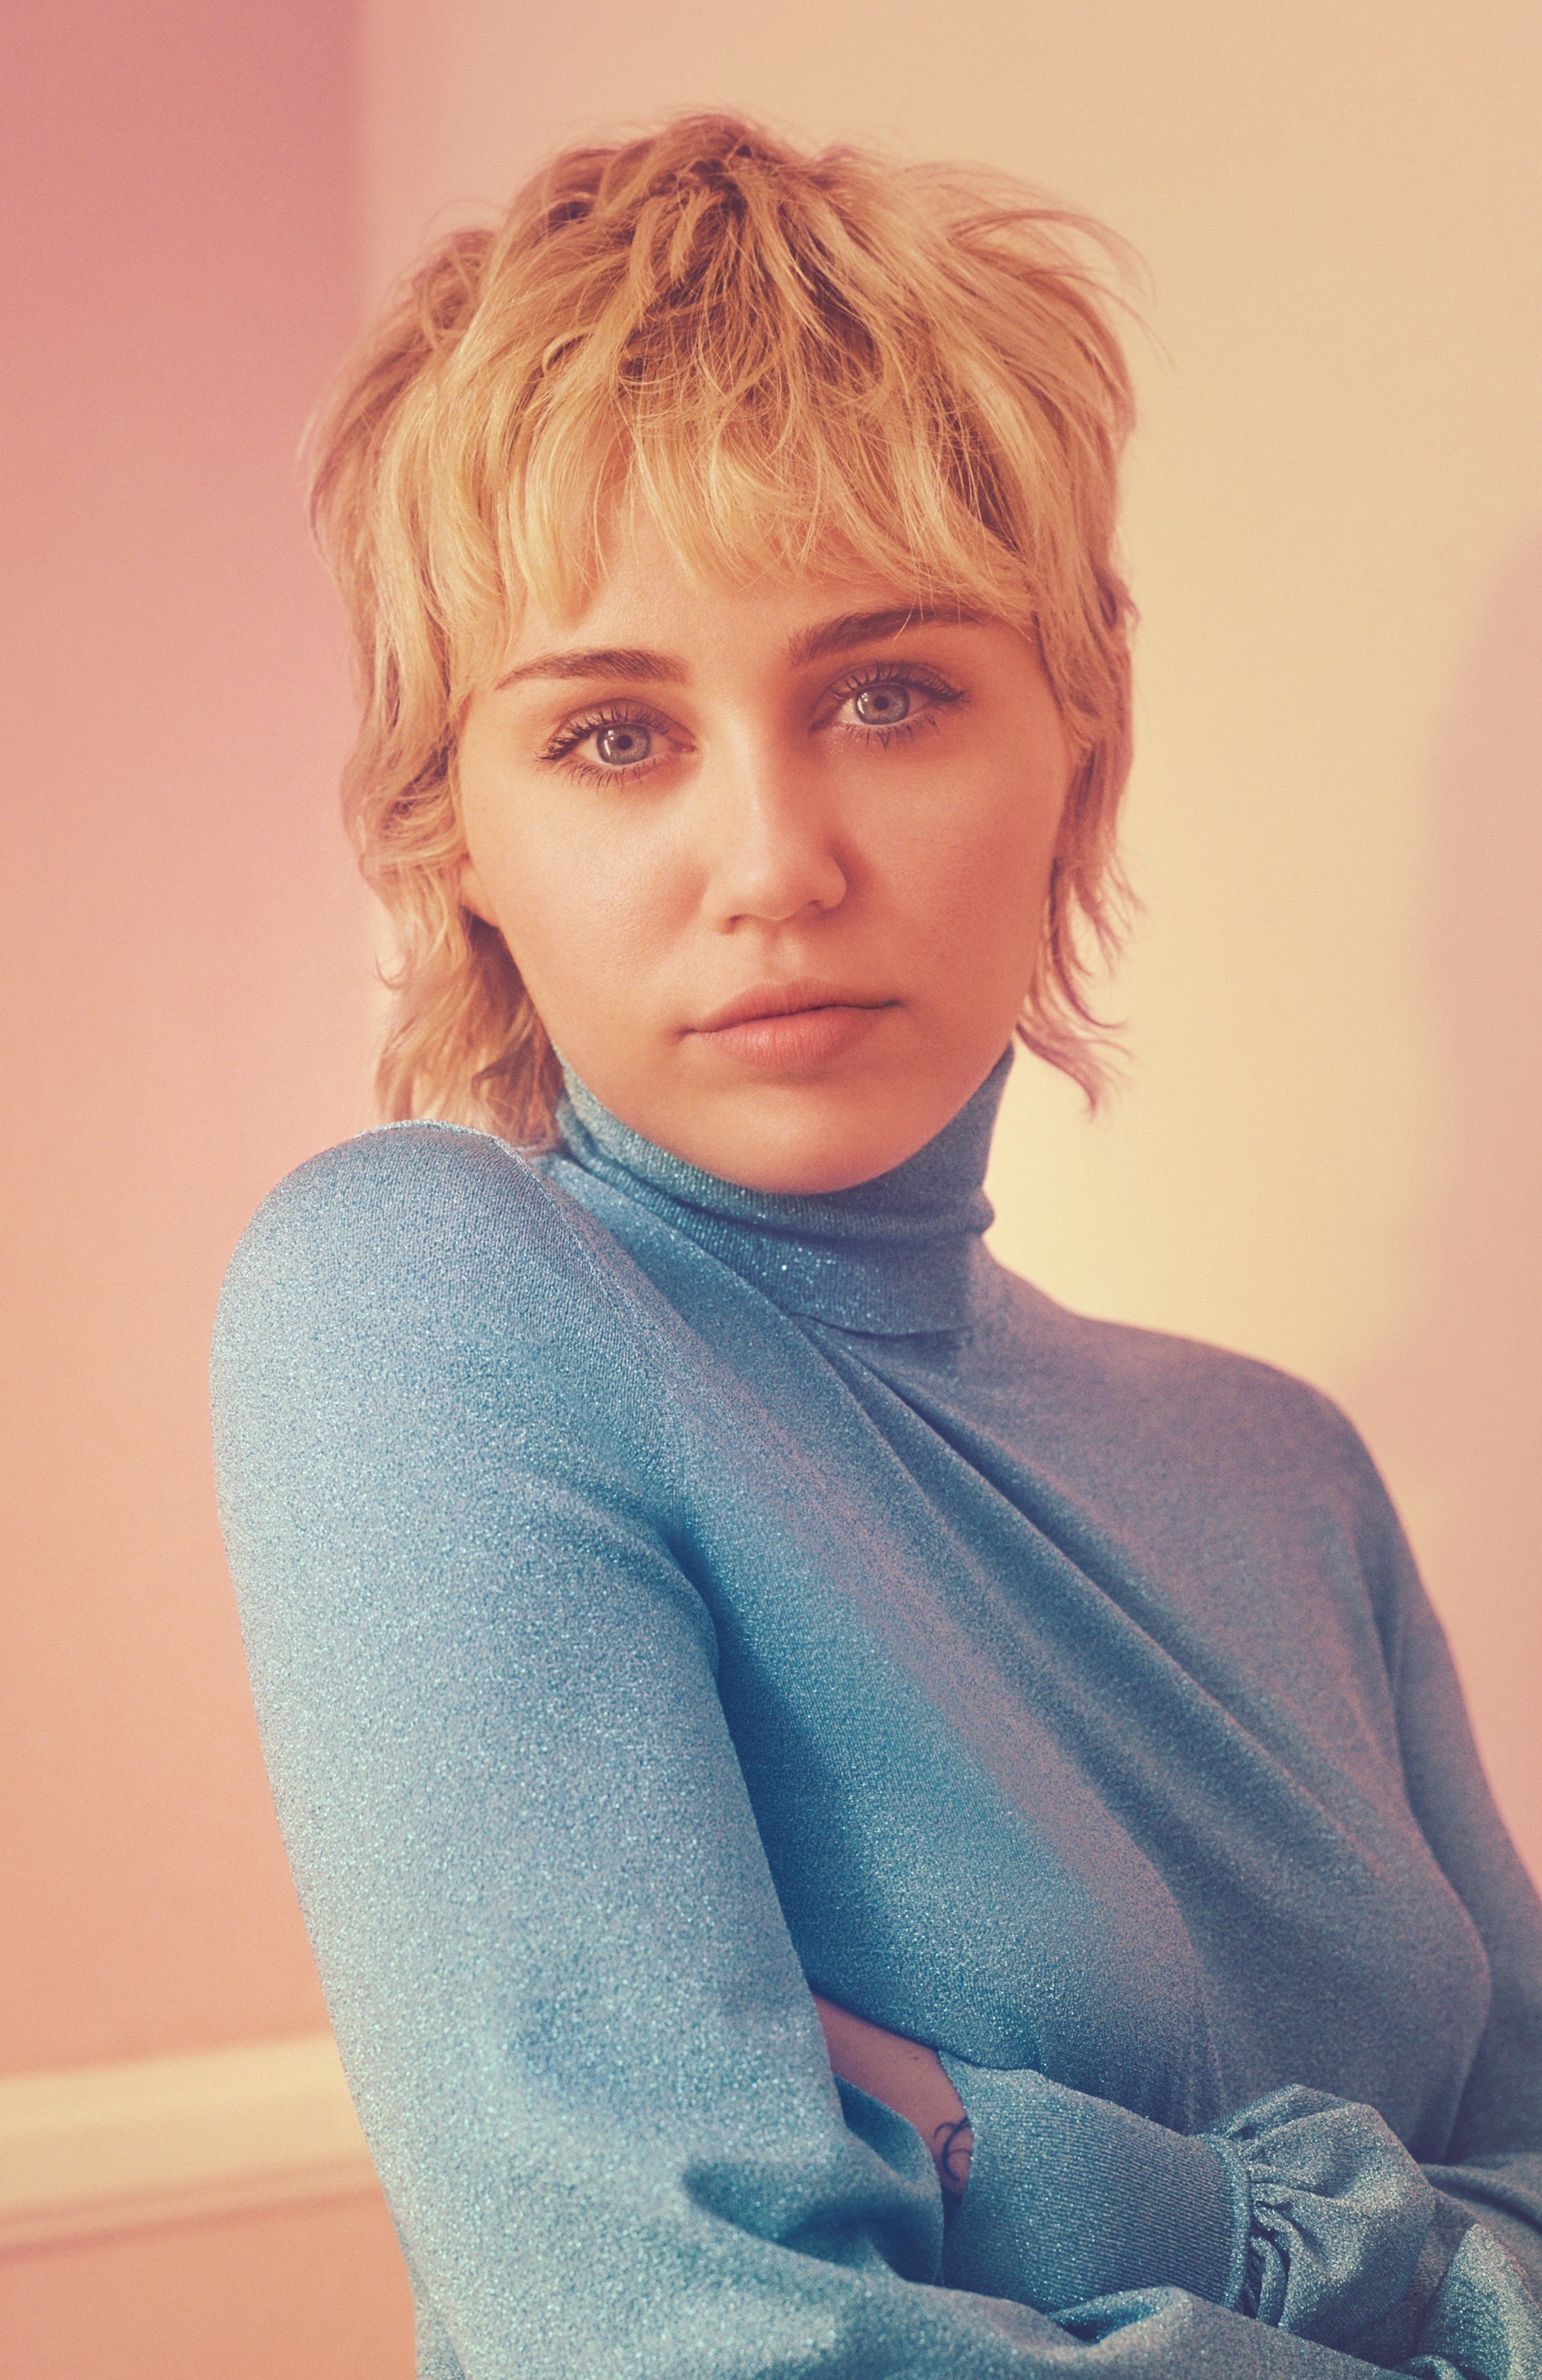 La cantante y actriz Miley Cyrus es conocida en el medio por su irreverencia. (Foto: EFE/Cedida por la firma)
